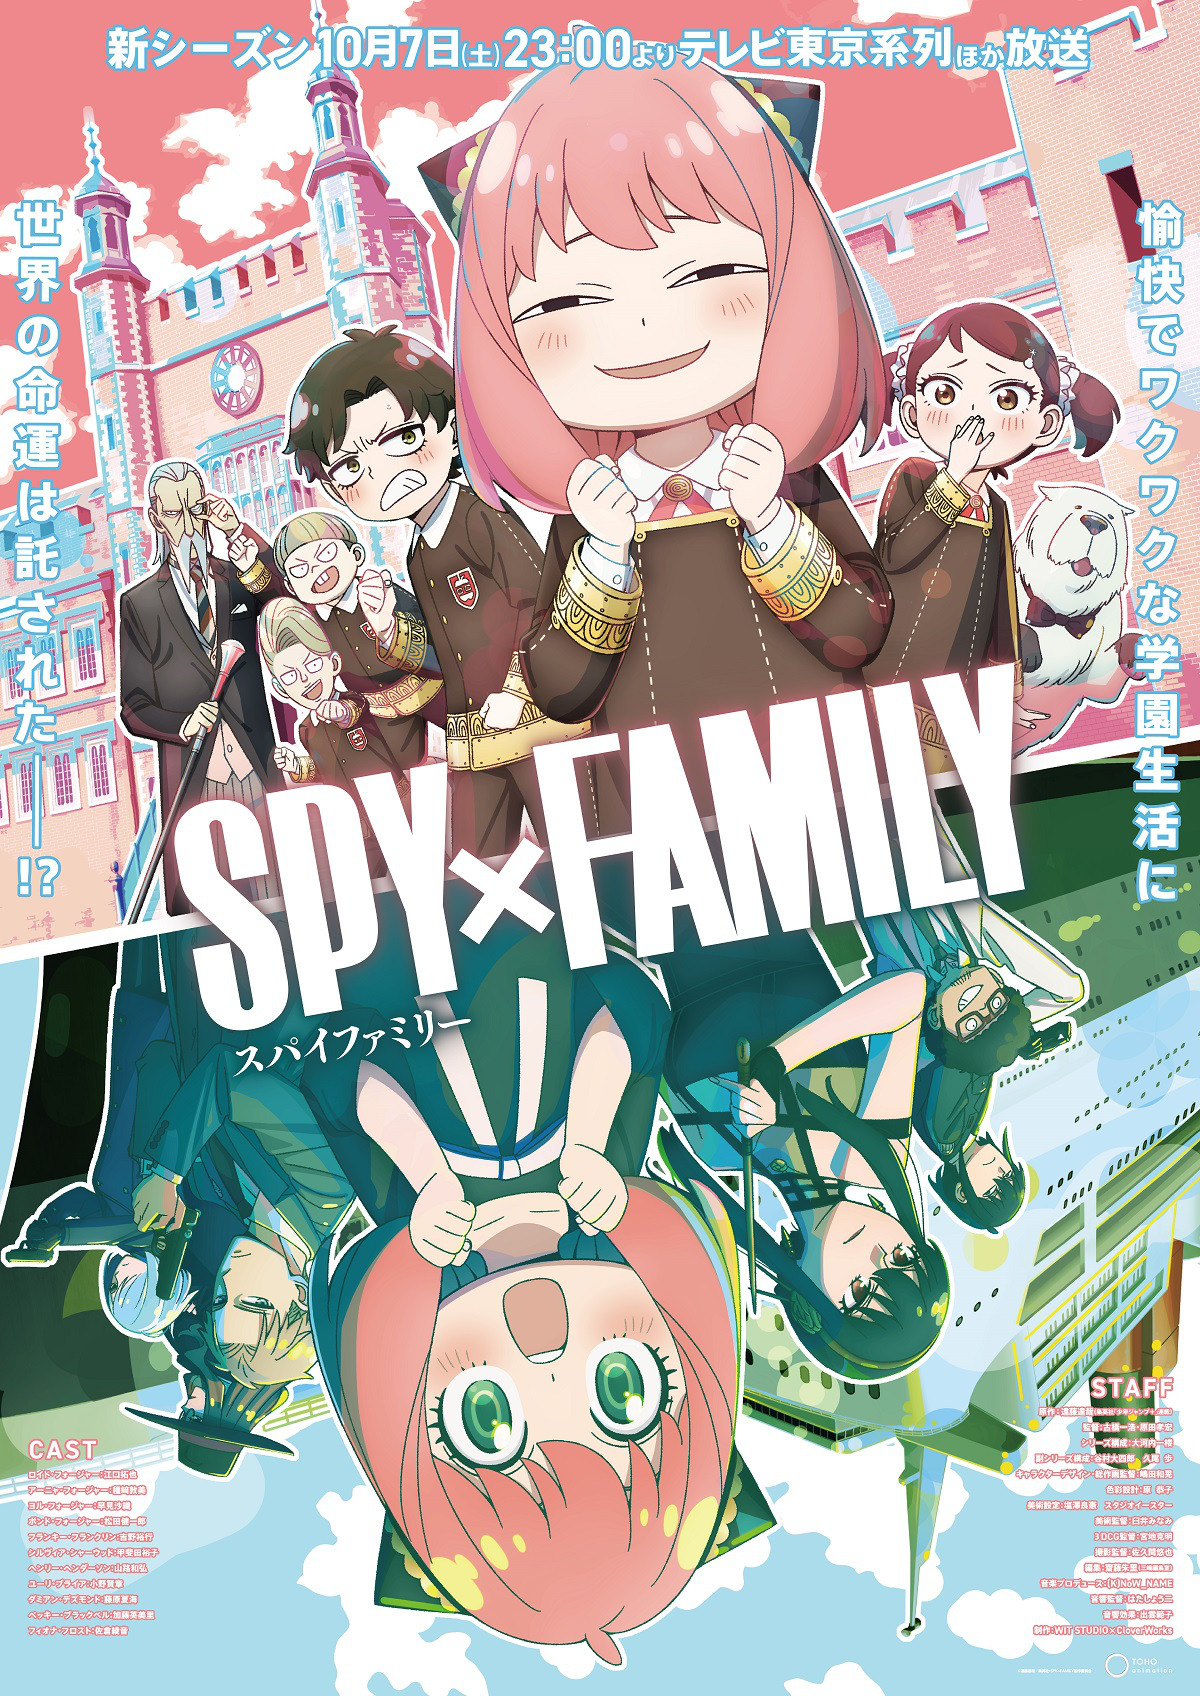 SPY x FAMILY celebra el episodio 2 de la segunda temporada con un nuevo  arte